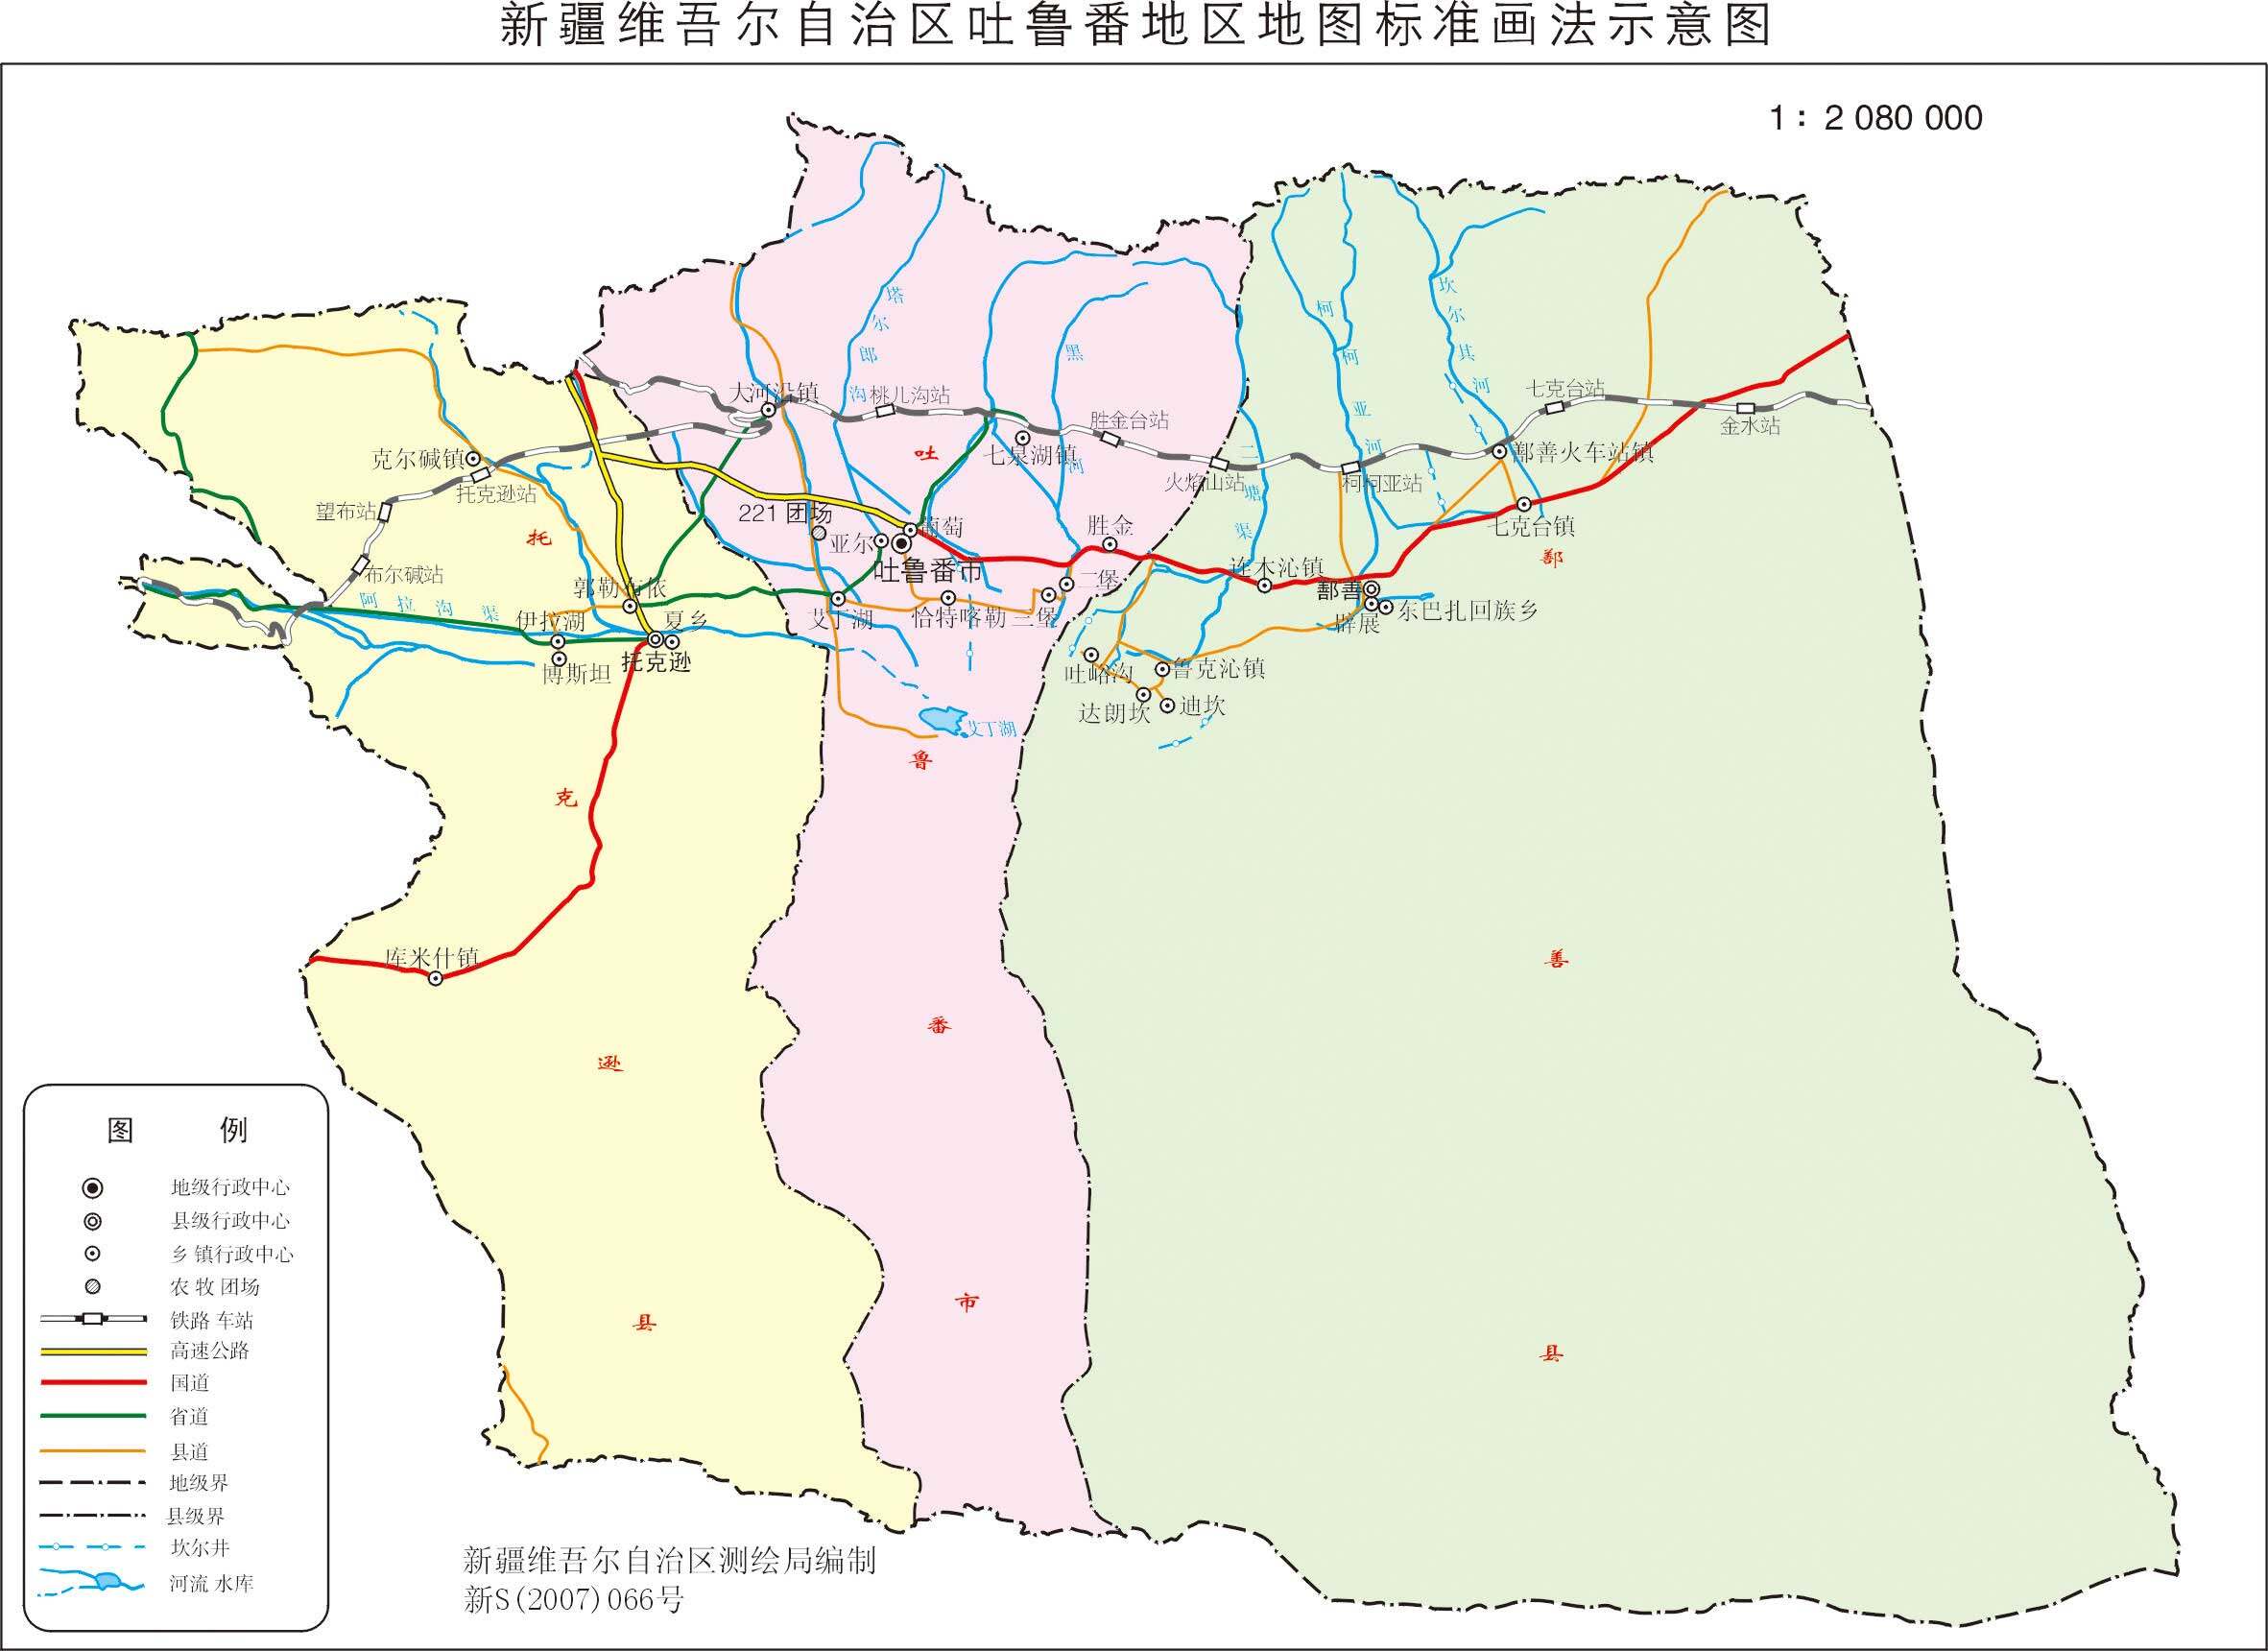 关键字: 吐鲁番地吐鲁番地区吐鲁番地区地图吐鲁番地区政区吐鲁番旅游